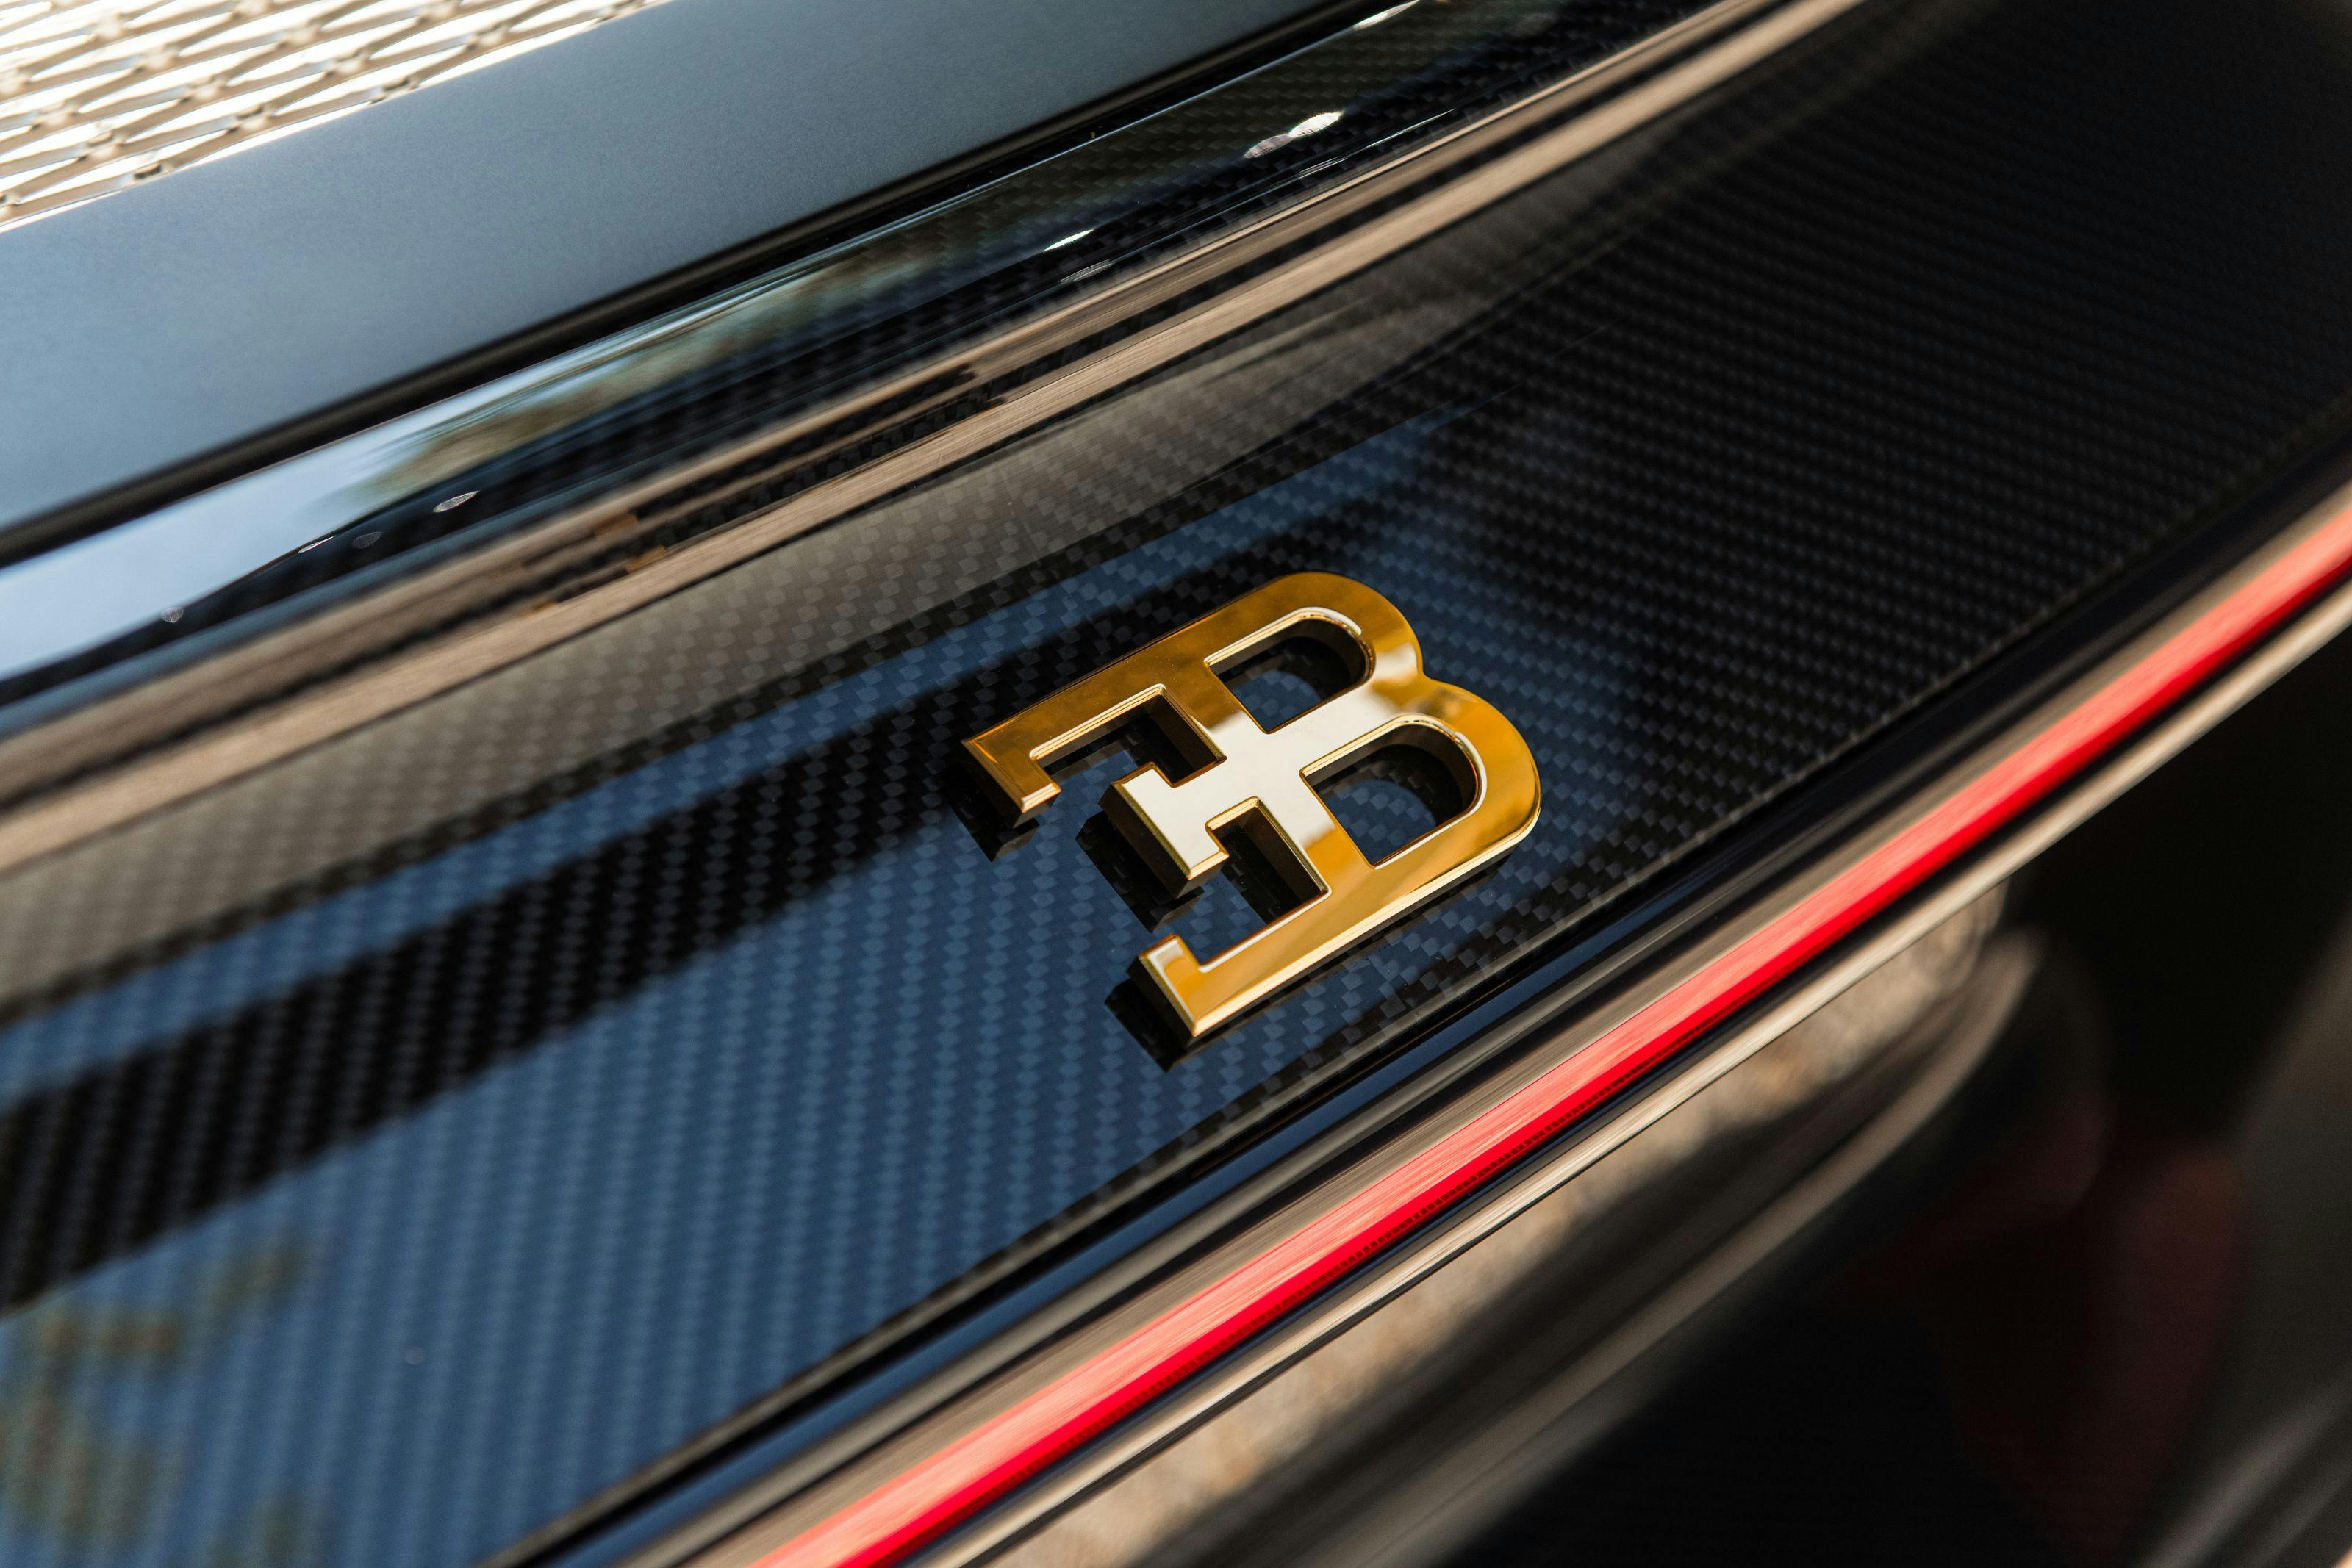 Bugatti Chiron L’Ébé – Chiron erhält erstmals Zierteile aus 24-karätigem Gold